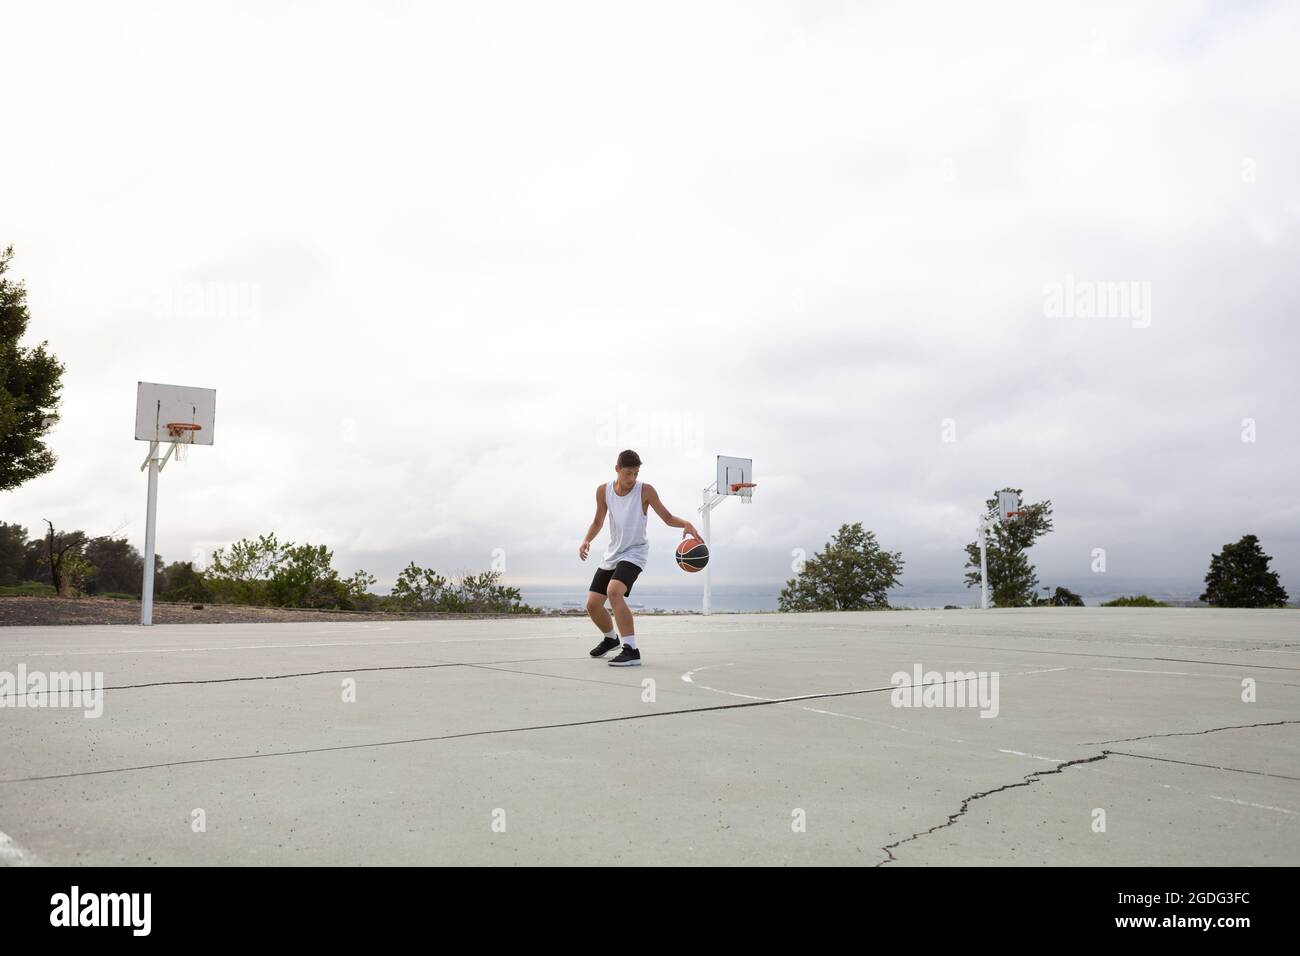 Joueur de basket-ball chez les hommes pratiquant avec balle sur un terrain de basket-ball Banque D'Images